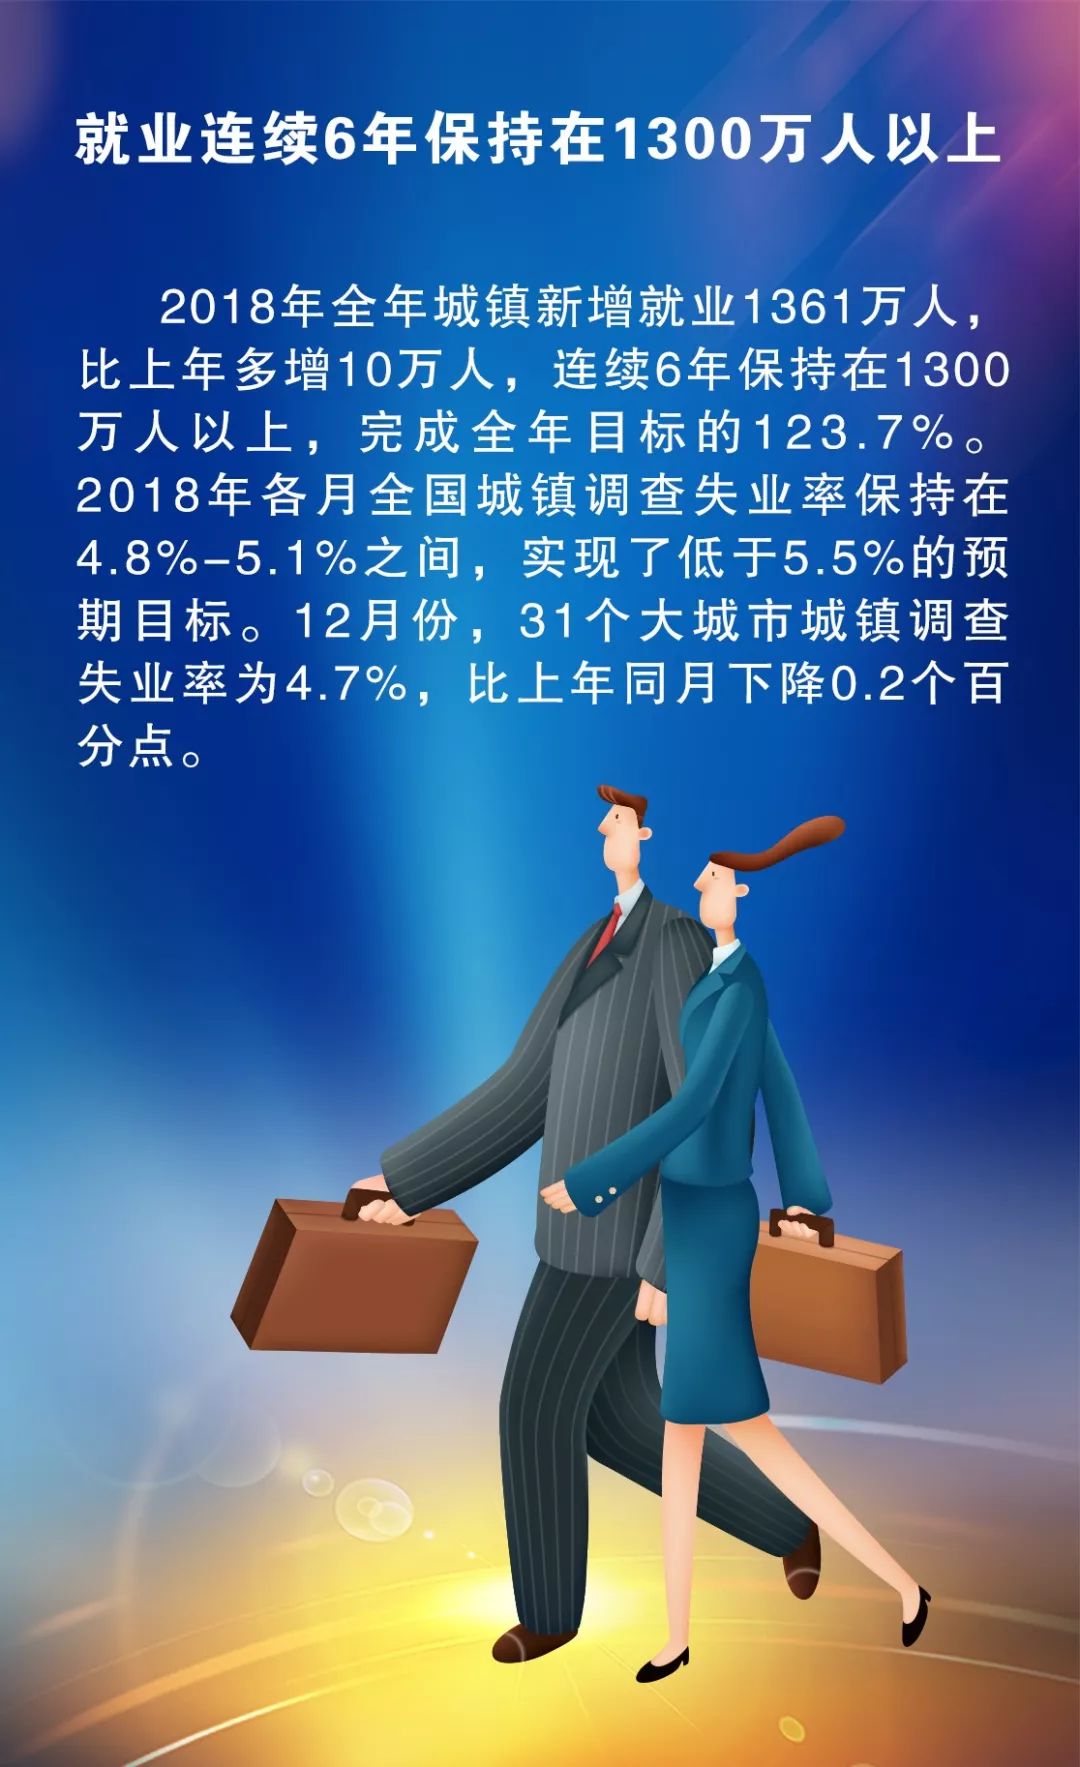 中国经济总量破90万亿元,2019年有望迈入中高